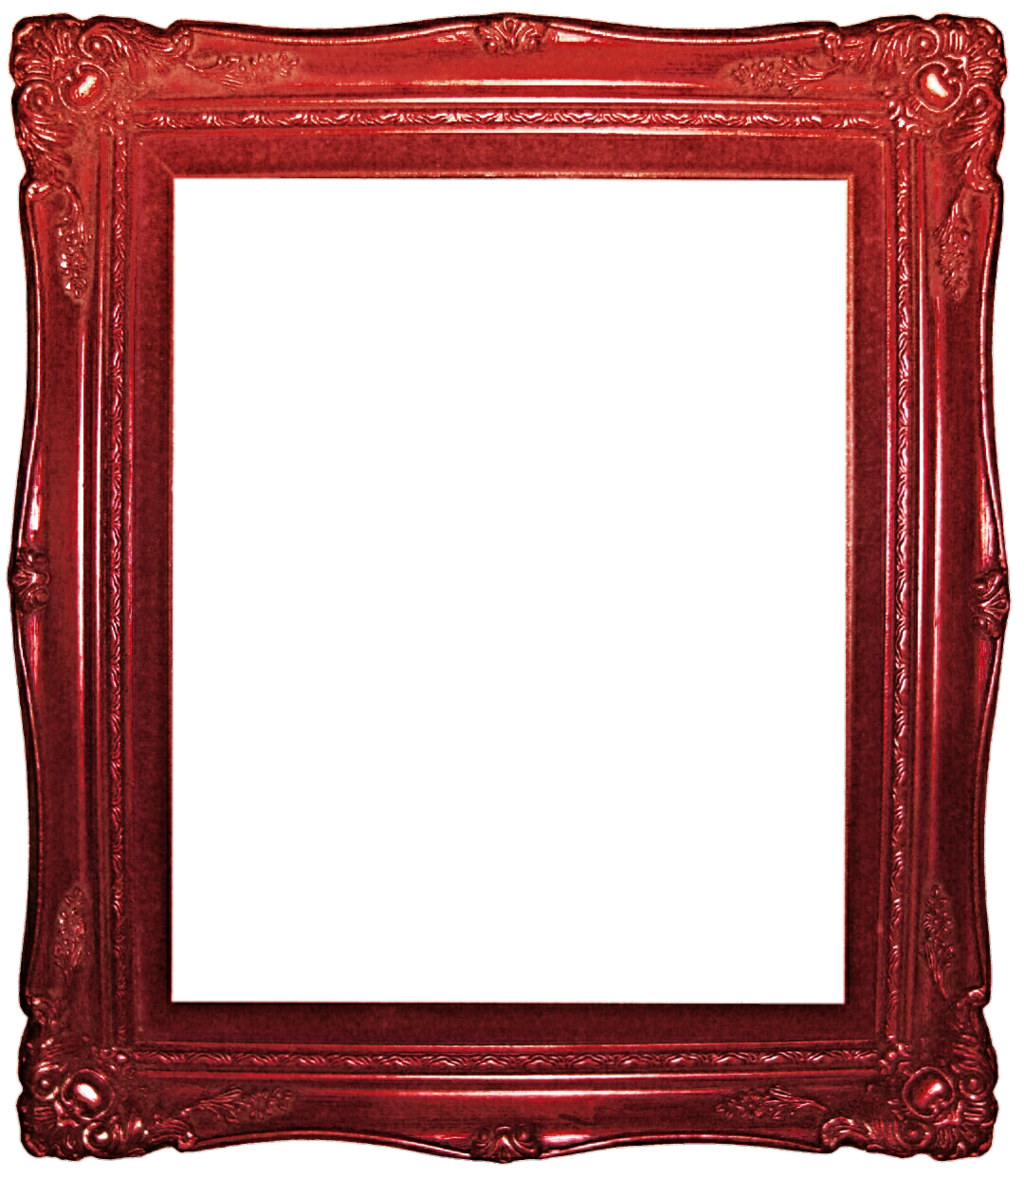 Blood Red Frame Download Transparent PNG Image